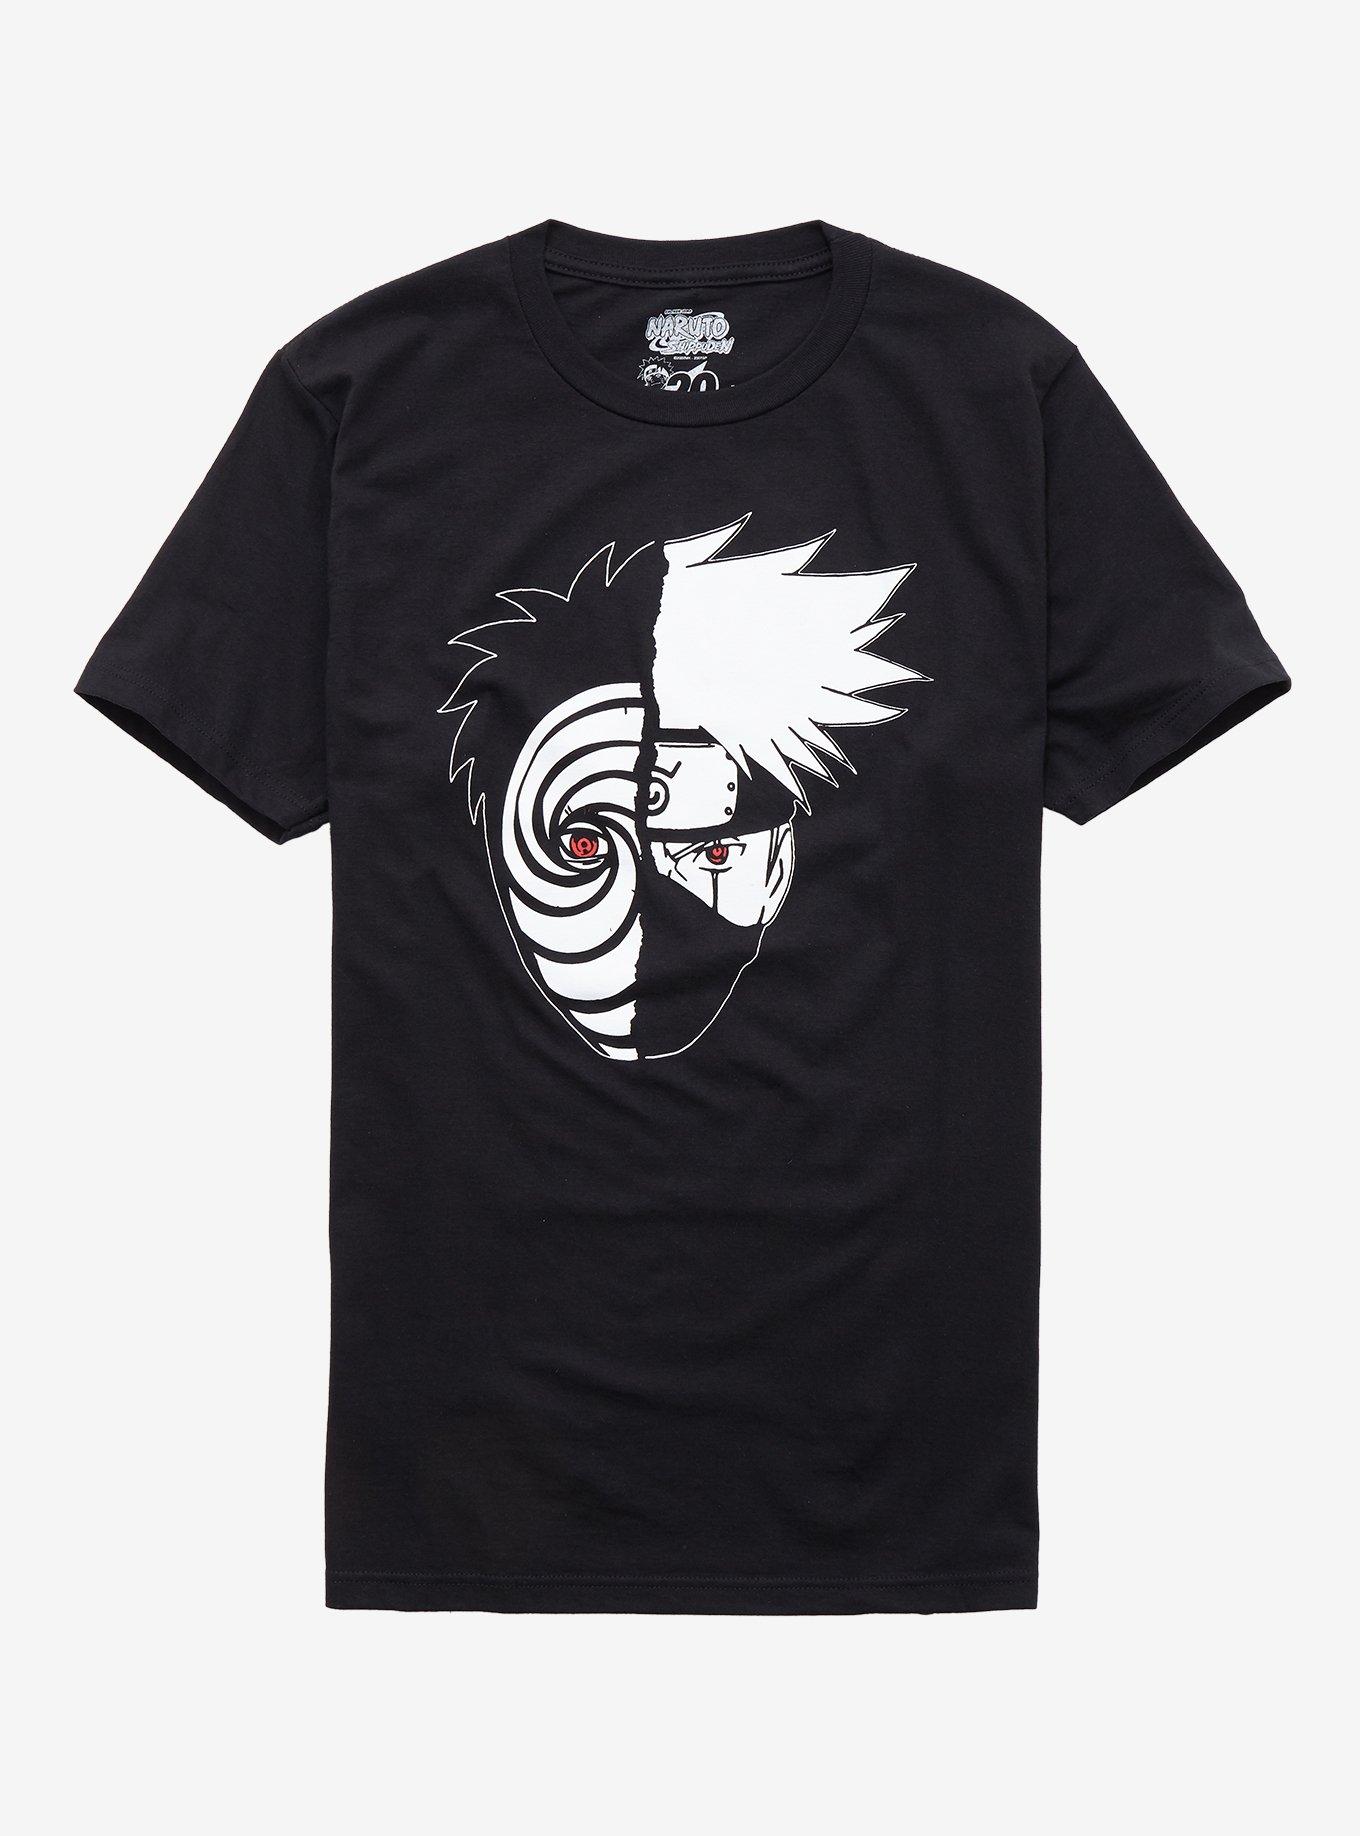 Naruto Shippuden Tobi & Kakashi Split T-Shirt | Hot Topic